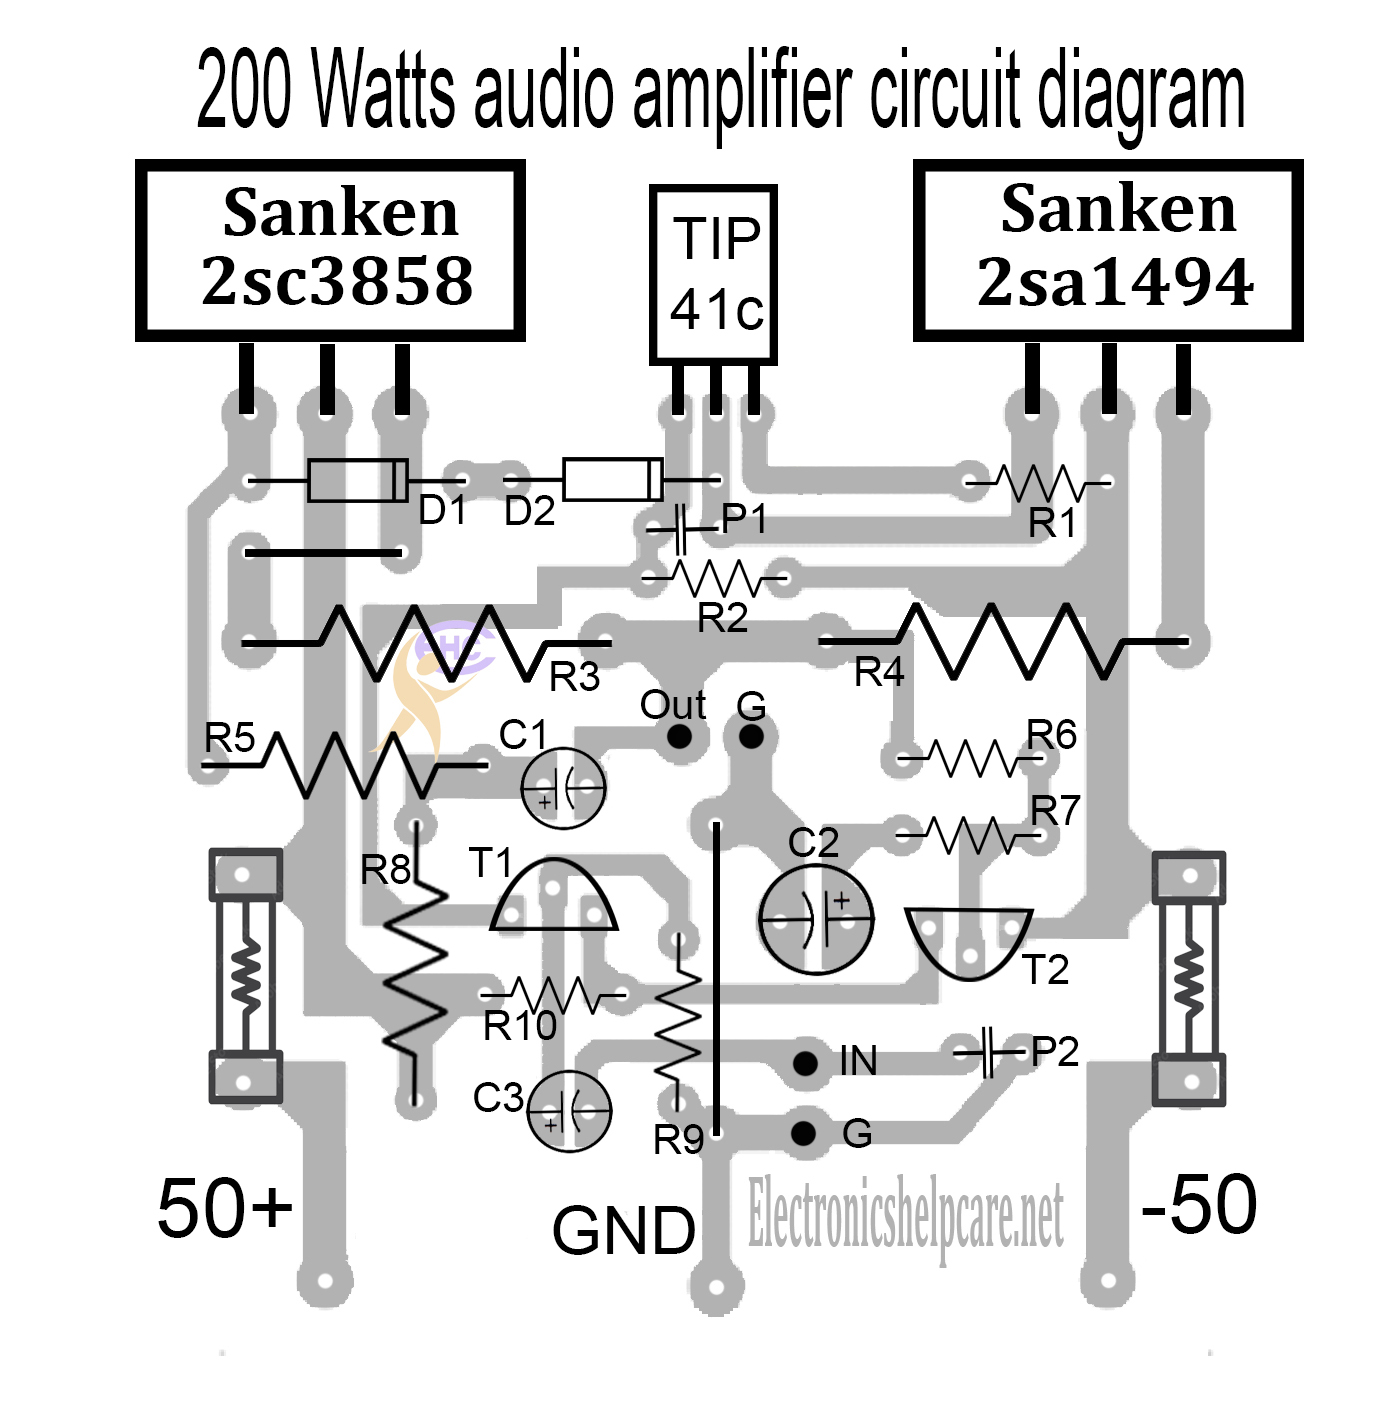 Amplifier circuit using sanken